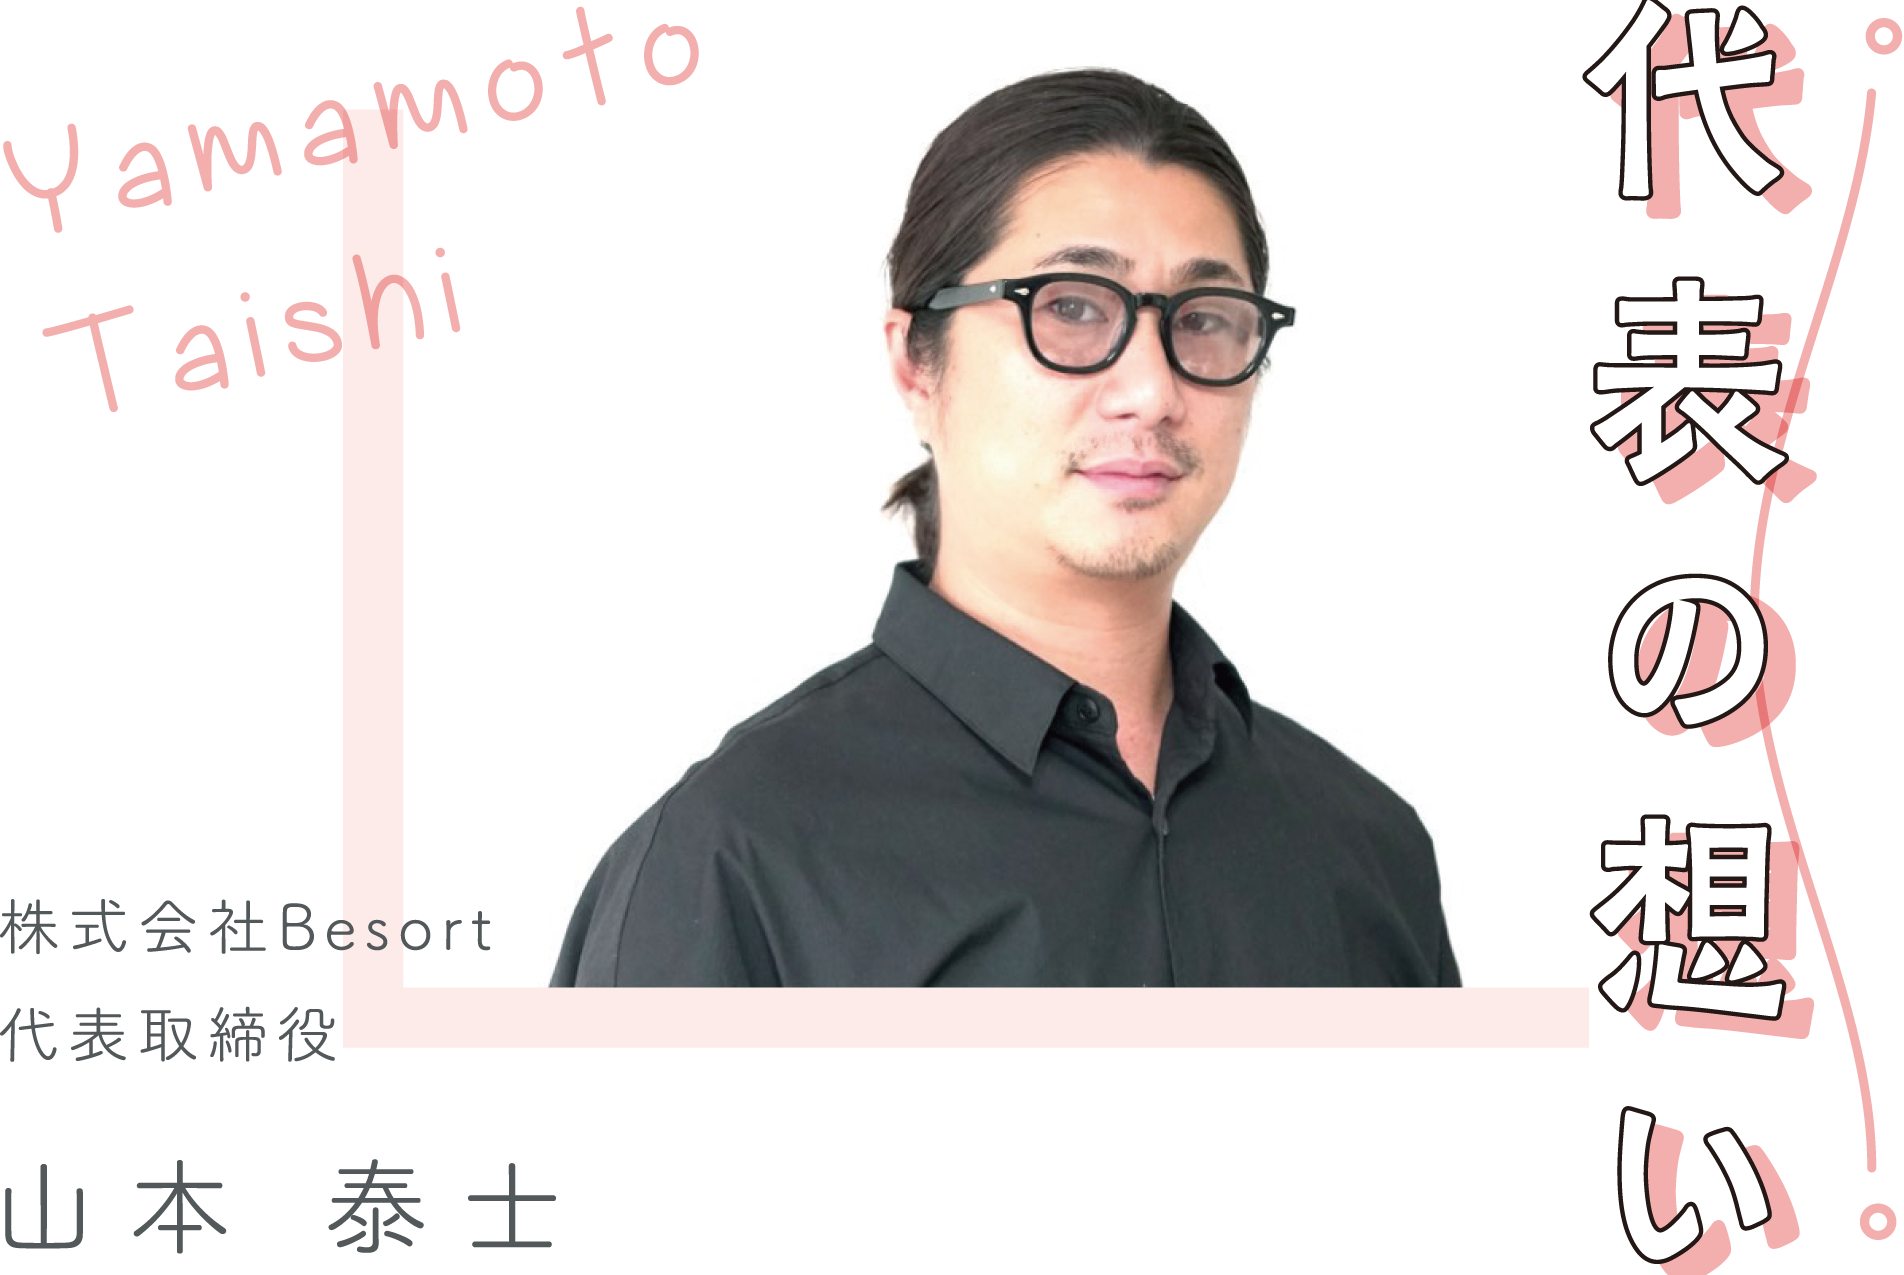 代表の想い YamamotoTaishi 株式会社Besort 代表取締役 山本 泰士